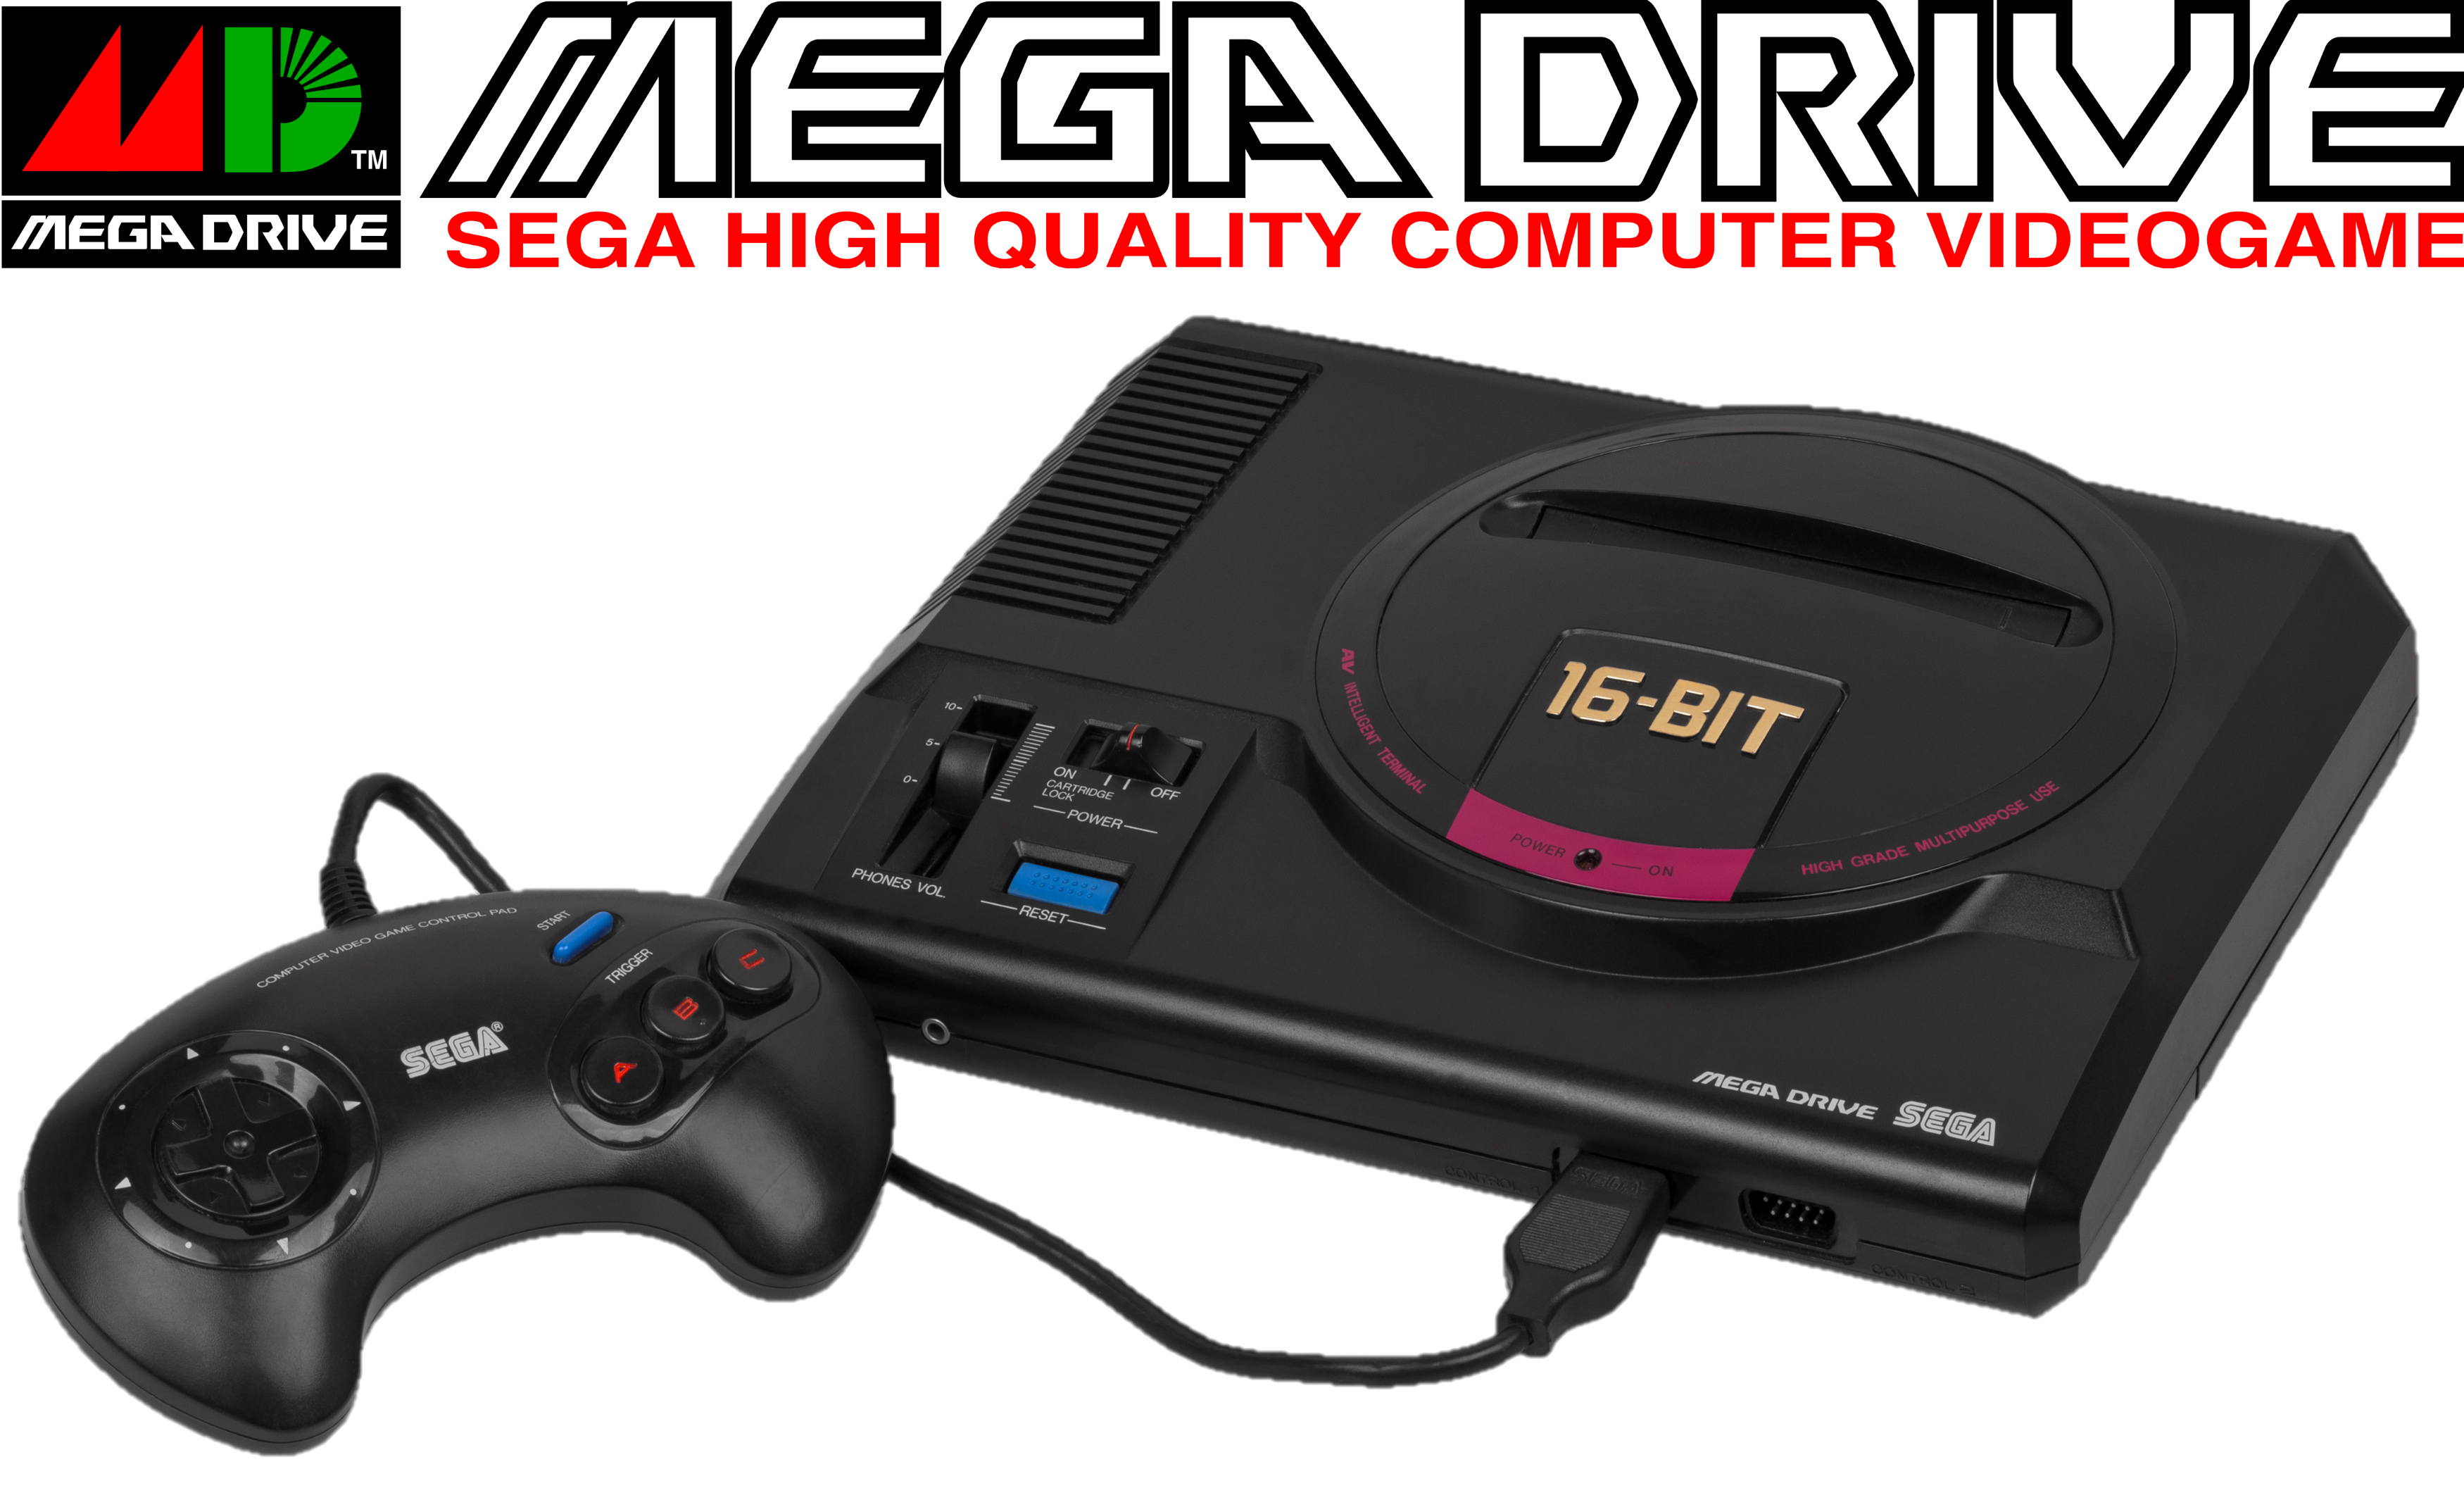 Sonic Games  SSega Play Retro Sega Genesis / Mega drive video